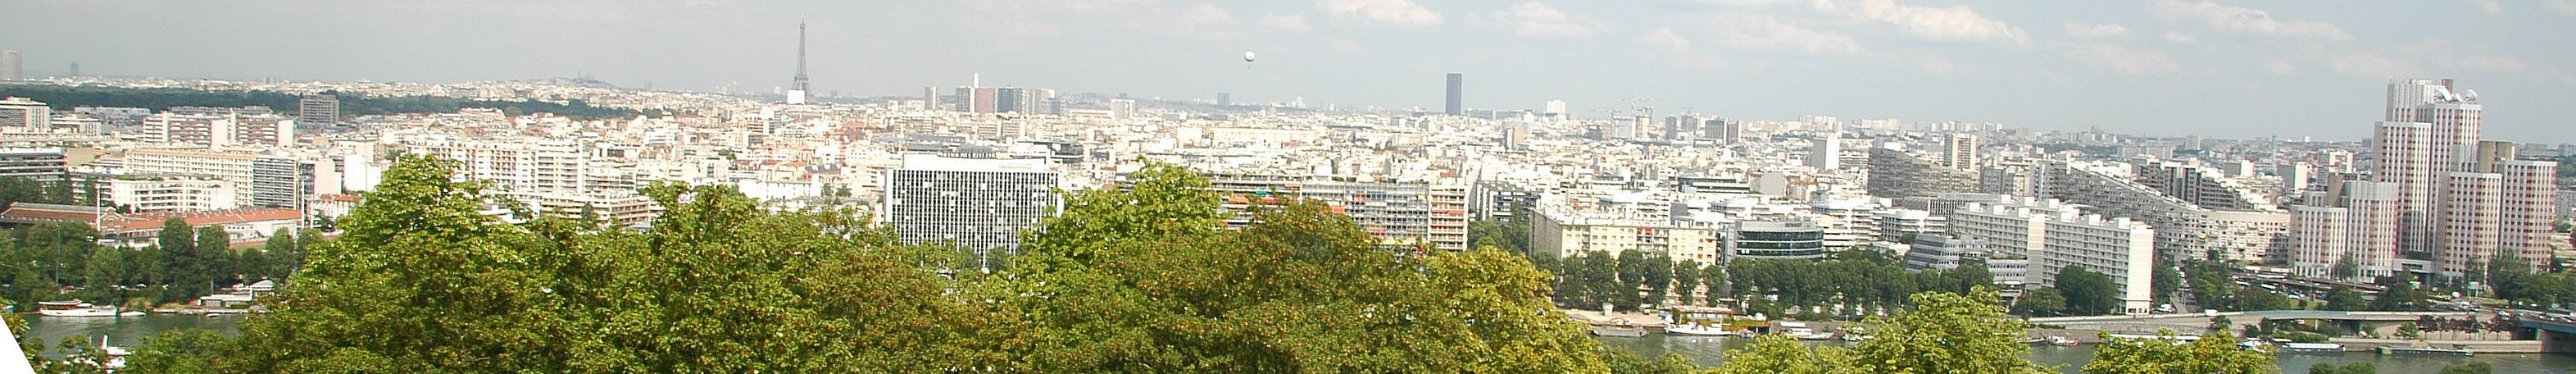 Vue de l'agglomération parisienne depuis la Lanterne (balcon) du Parc de Saint-Cloud, en surplomb de la Seine - Photo : Wikipédia